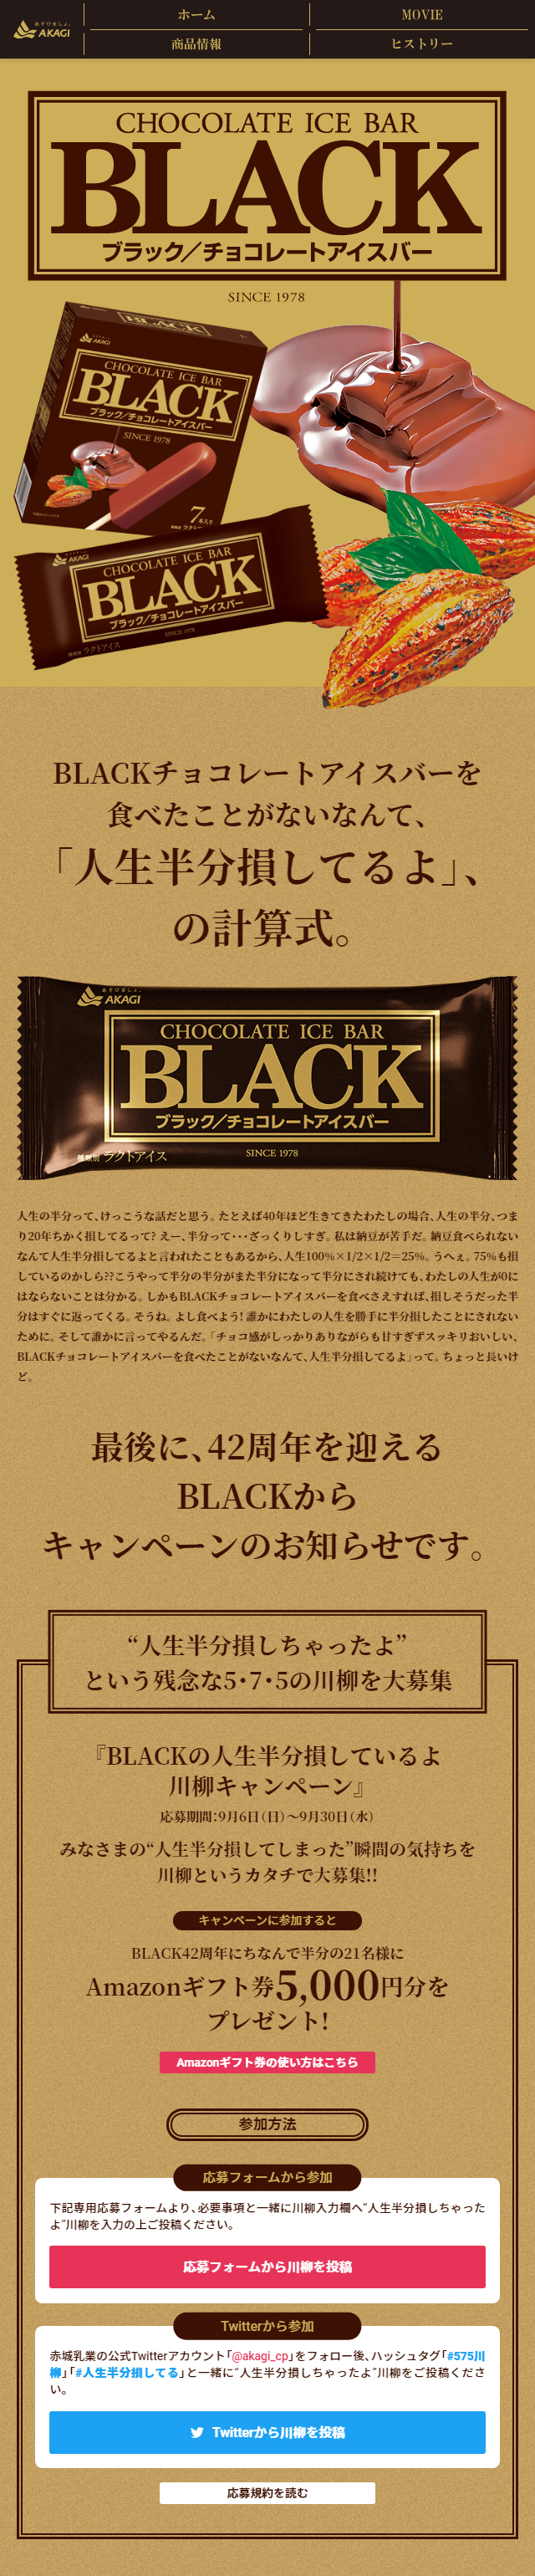 BLACK チョコレートアイスバー_sp_1